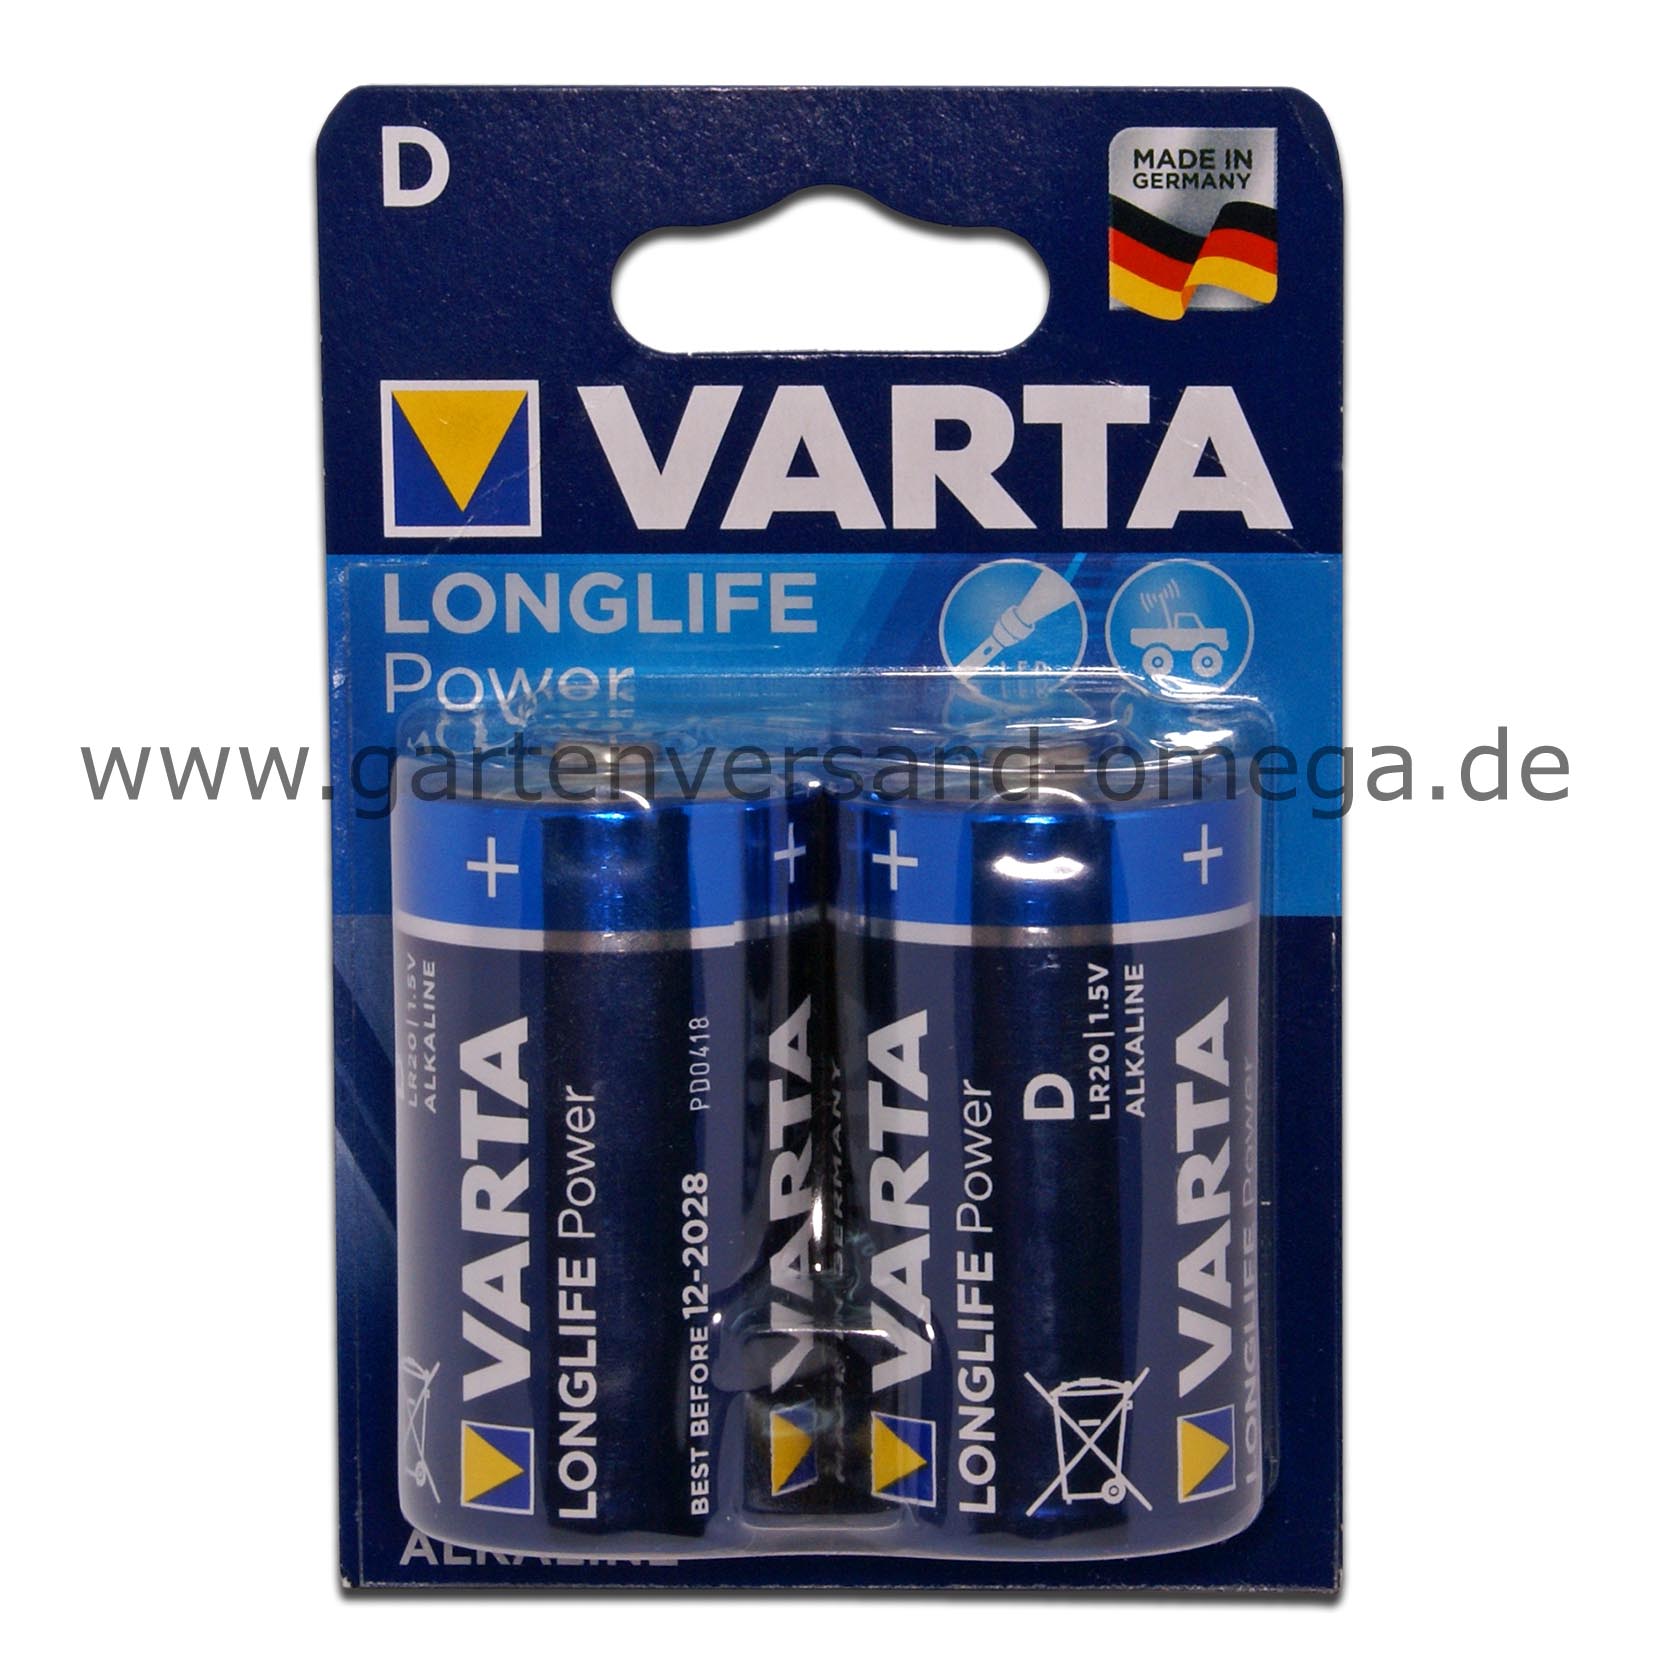 https://www.gartenversand-omega.de/media/image/4c/db/4d/Varta-Batterie-Longlife-Power-D-Mono_1215470.jpg